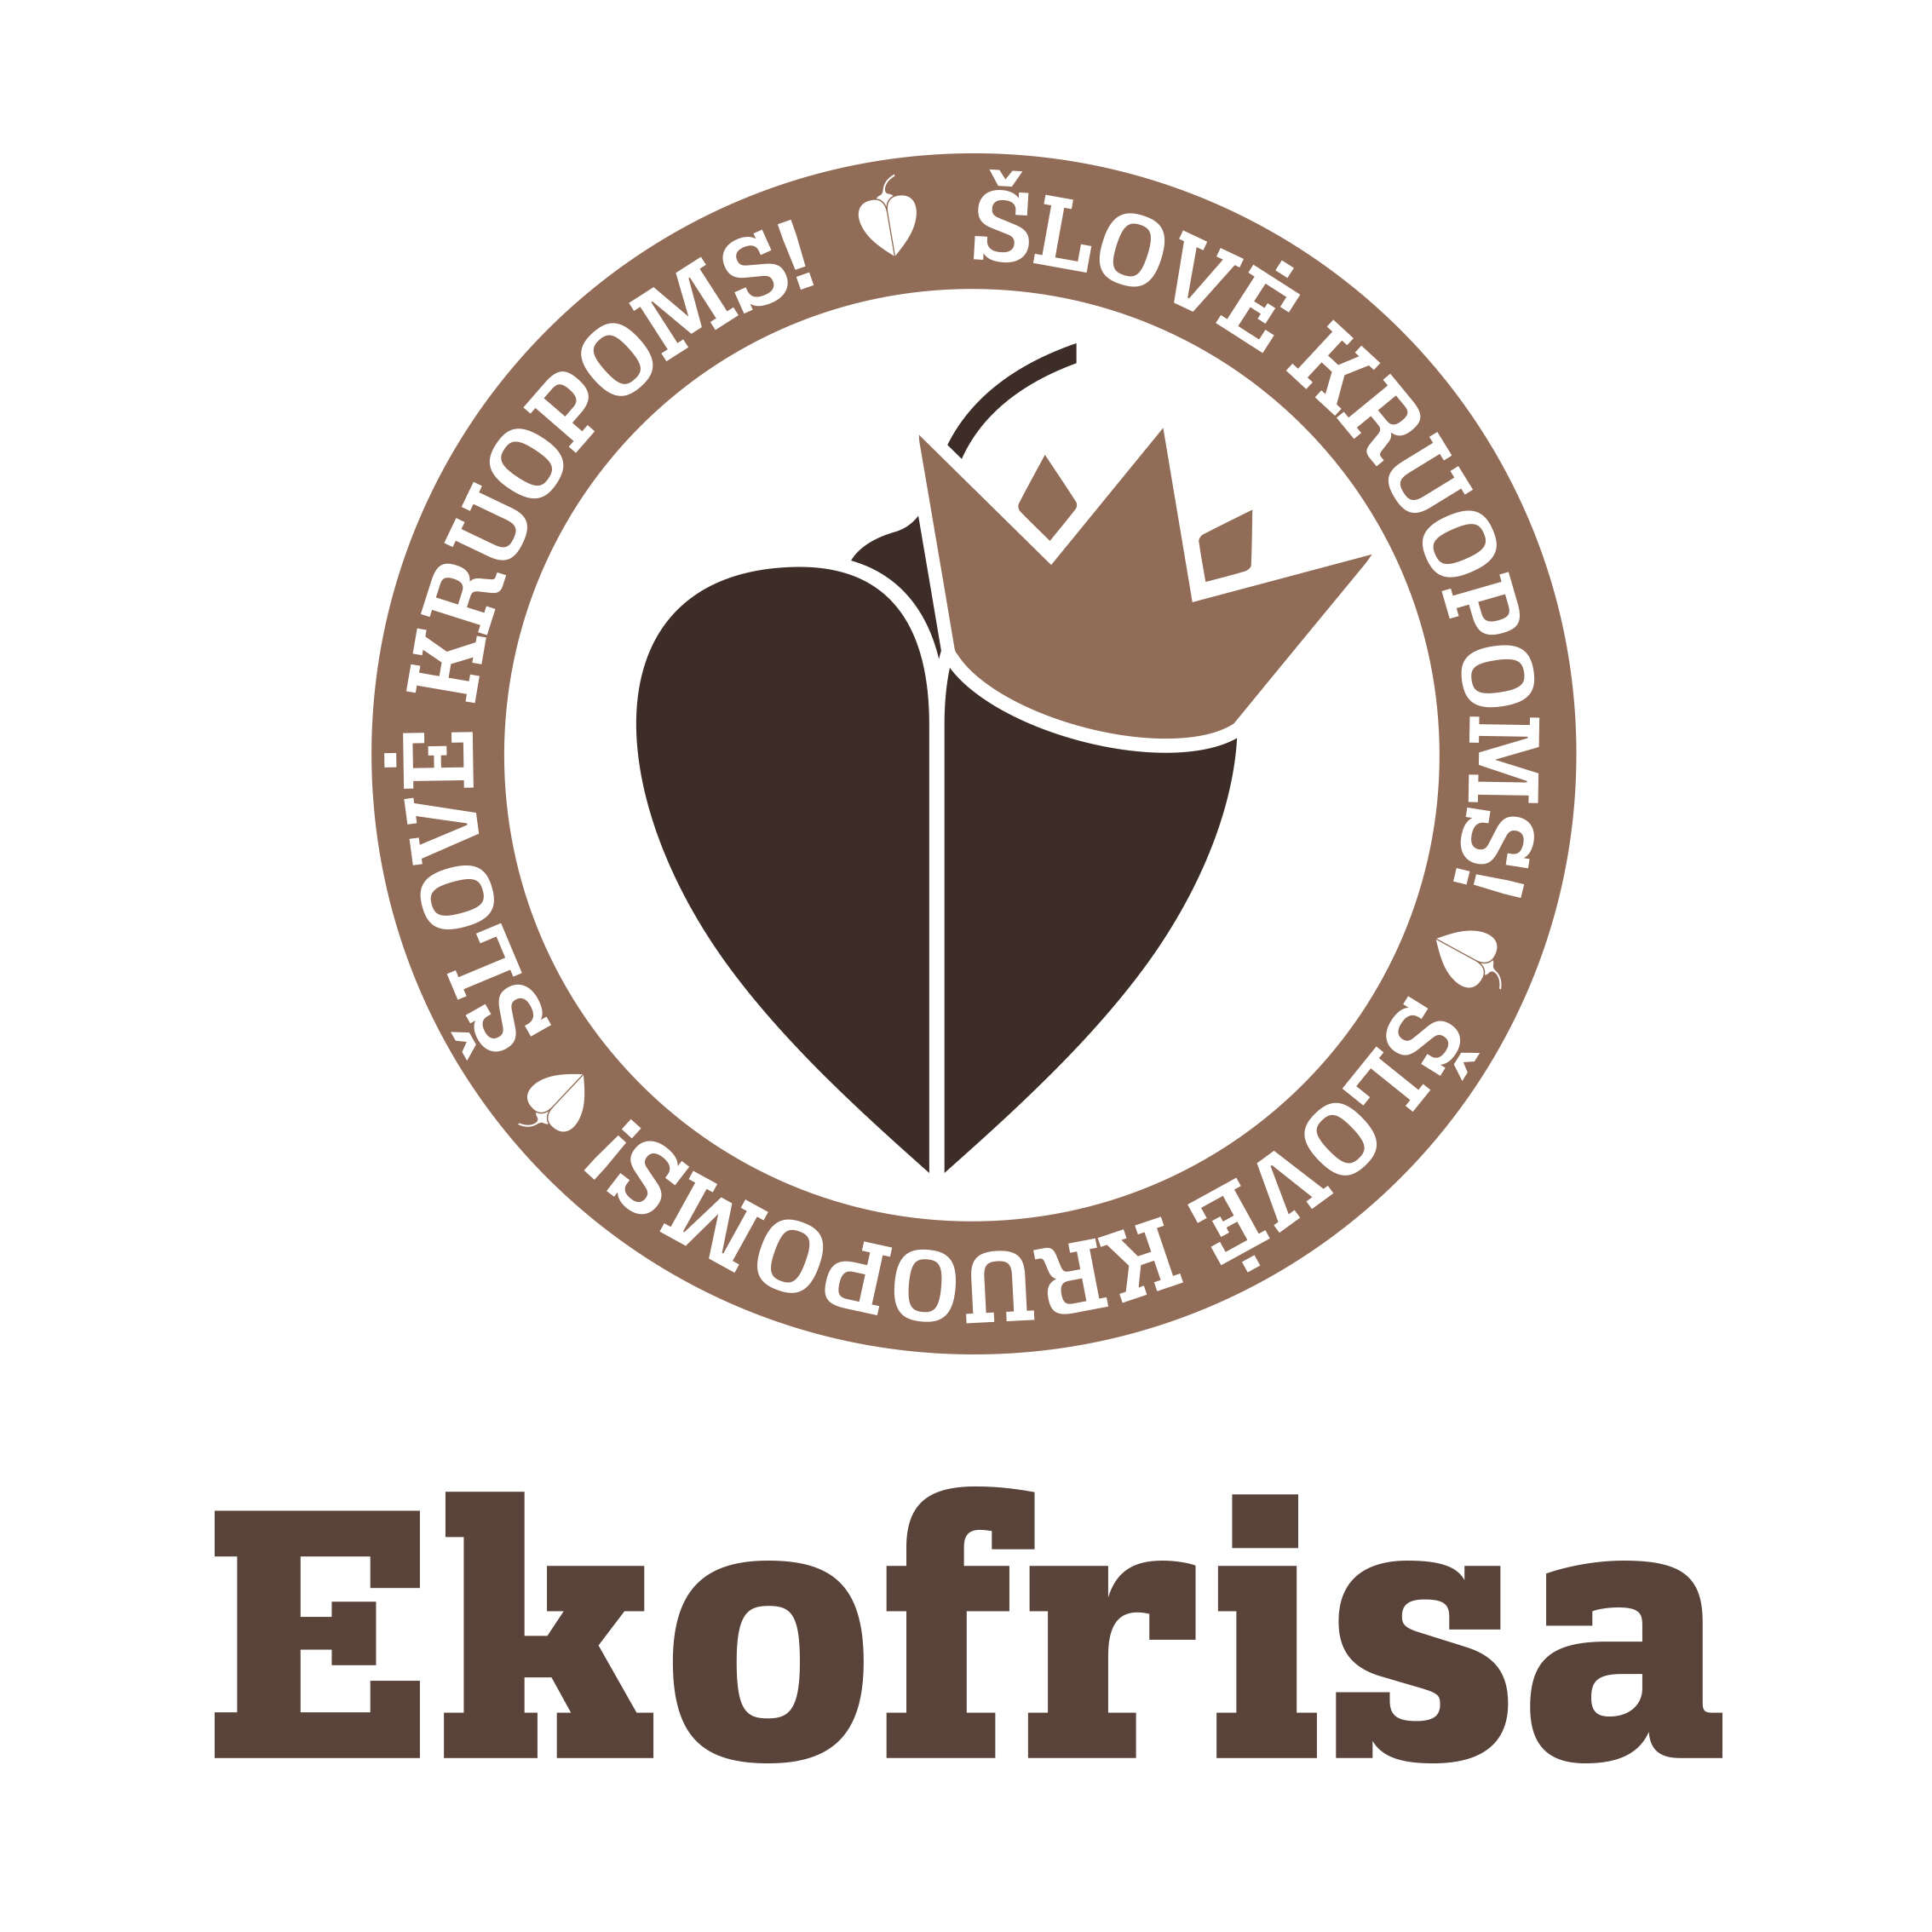 ekofrisa-logo-apvalus-150x150